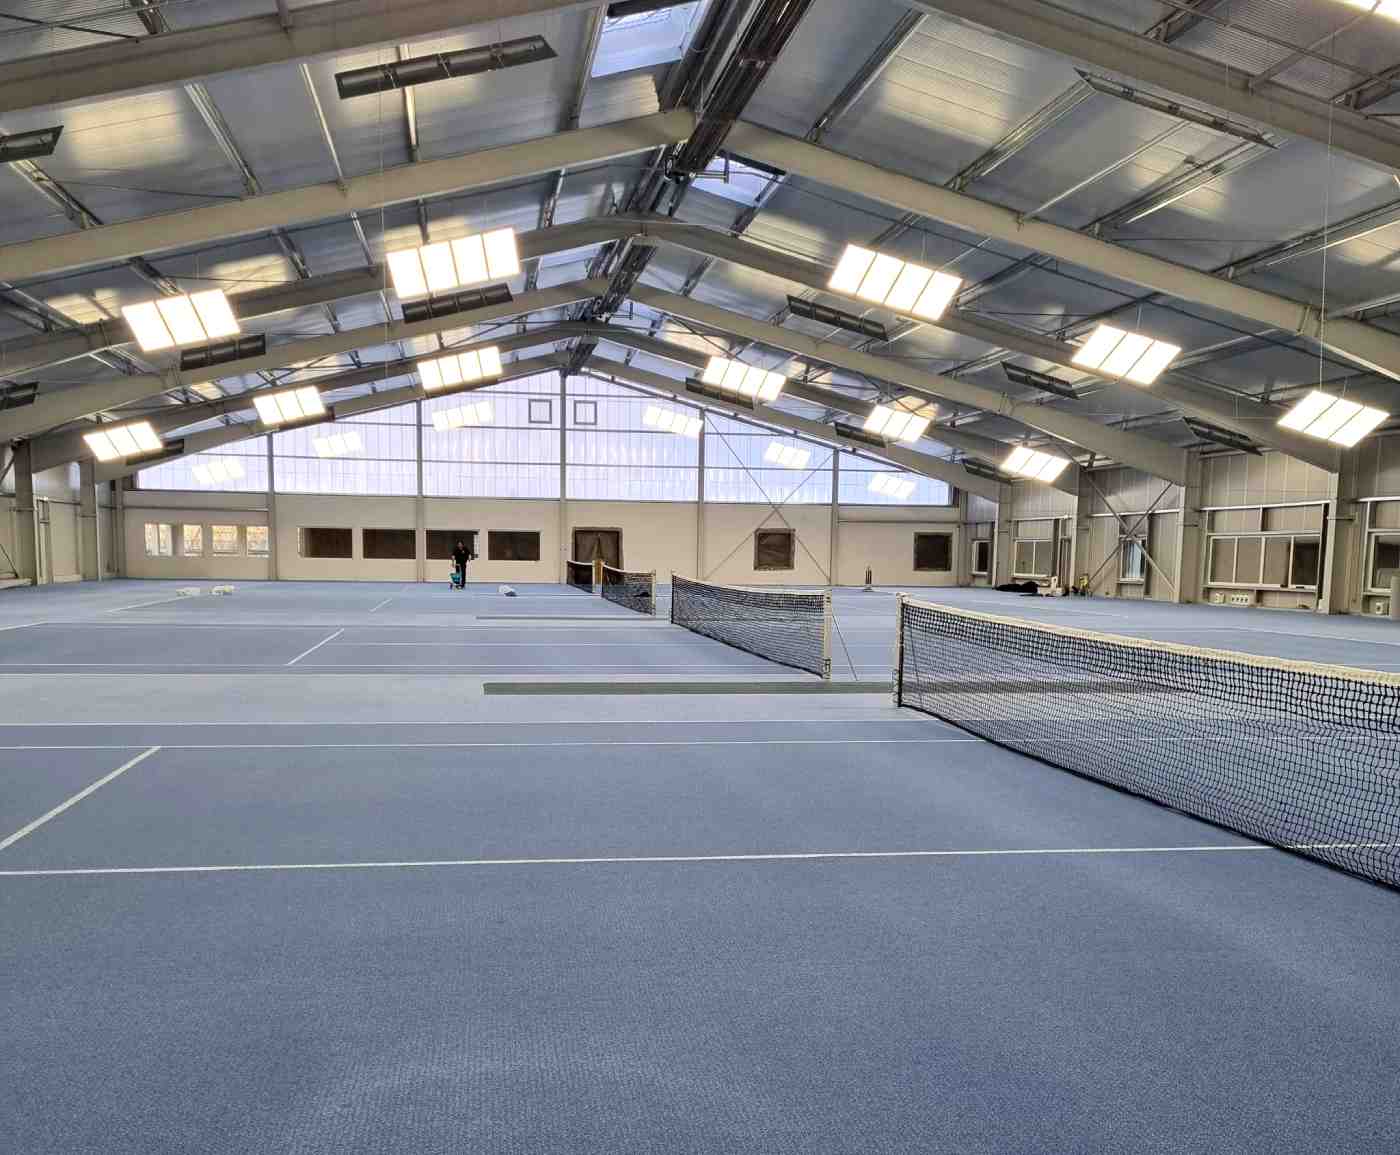 Bild der Tennishalle mit Netzen